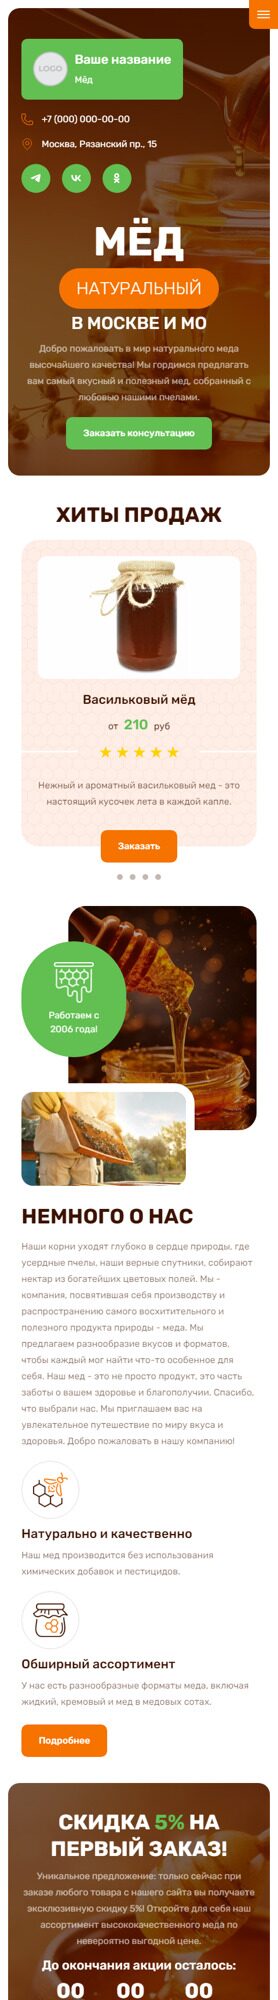 Готовый Сайт-Бизнес № 5409282 - Производство и продажа мёда (Мобильная версия)